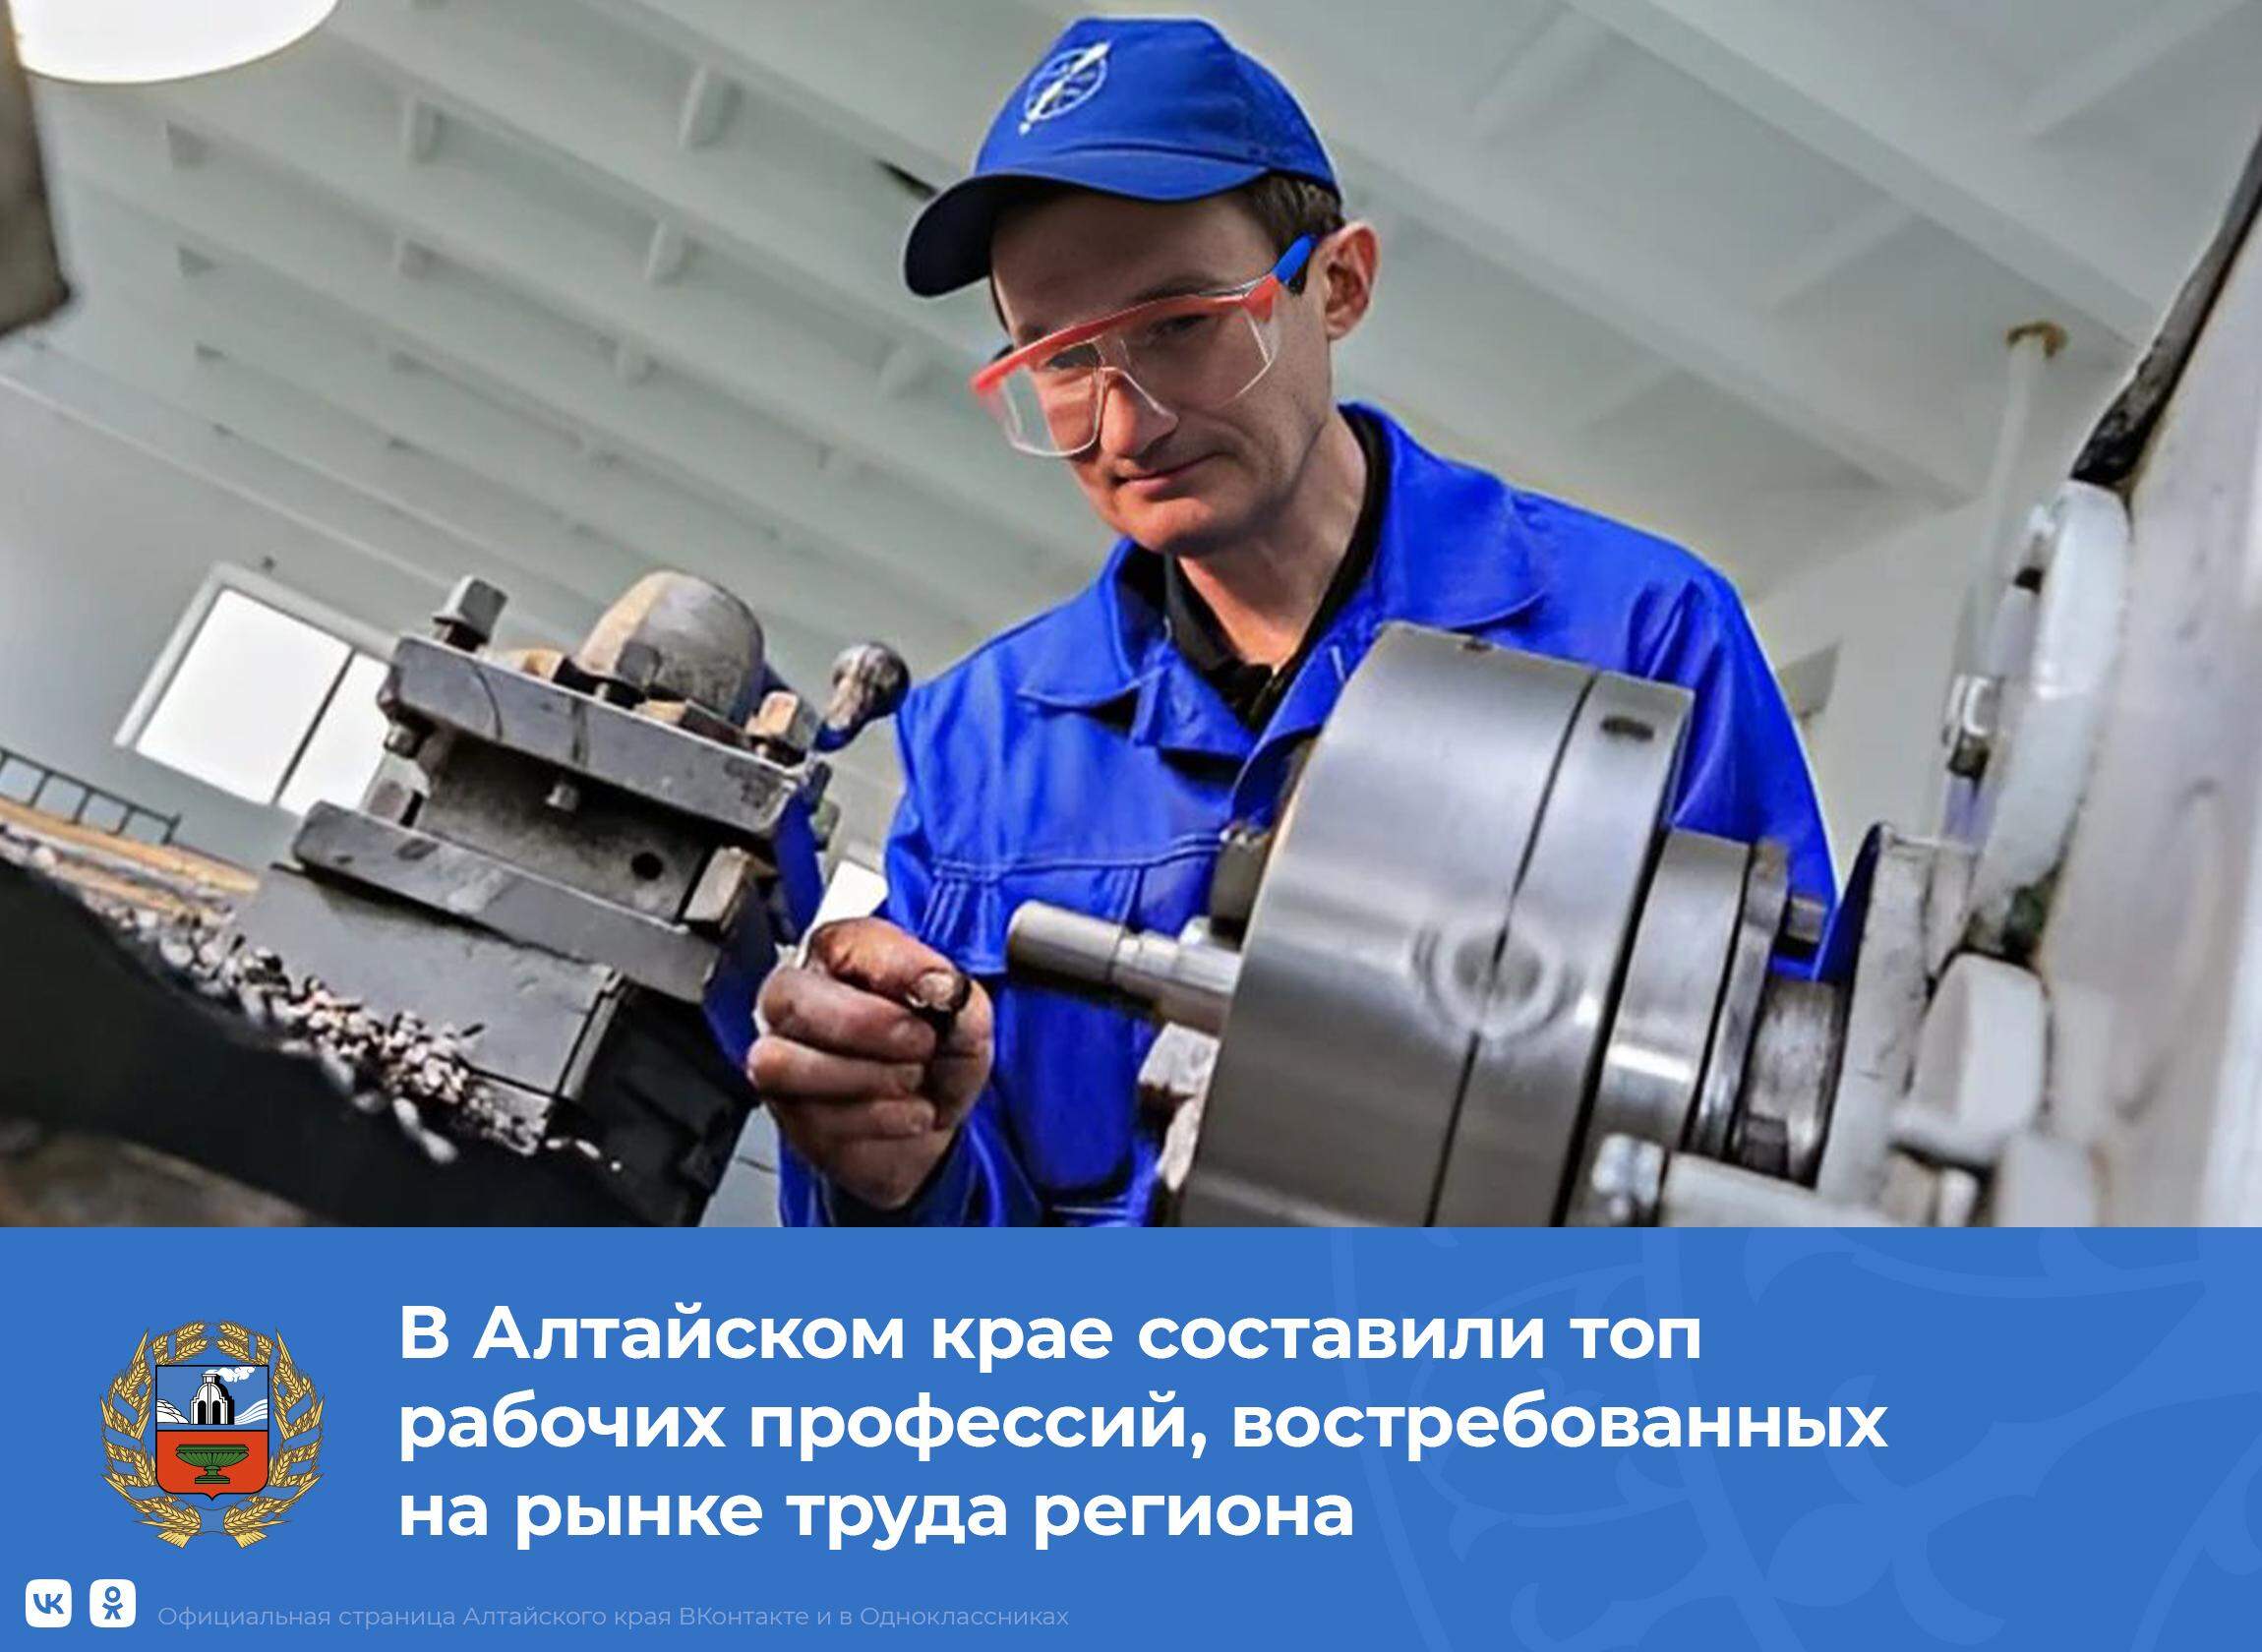 Какие профессии особенно востребованы на рынке труда в Алтайском крае.